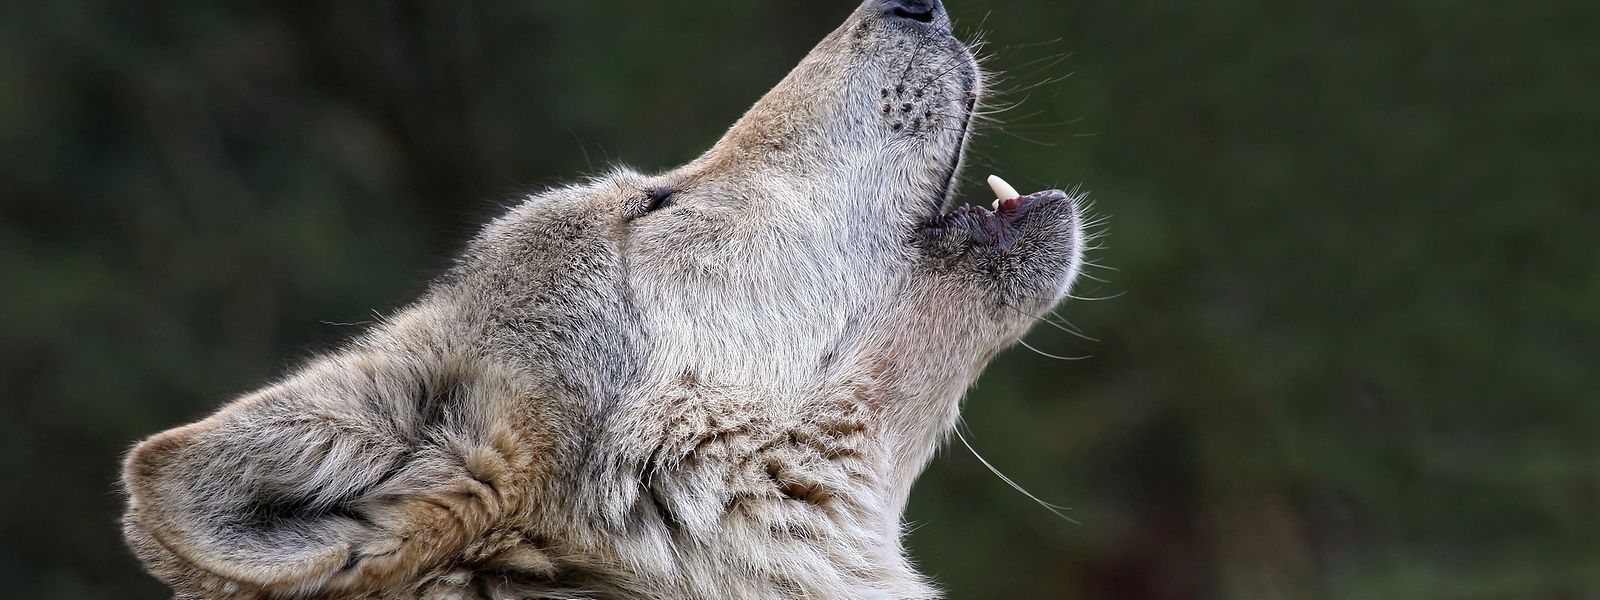 Forscher haben herausgefunden, dass der Mensch in nur einer Region der Welt den Wolf zum Hund gezähmt hat.